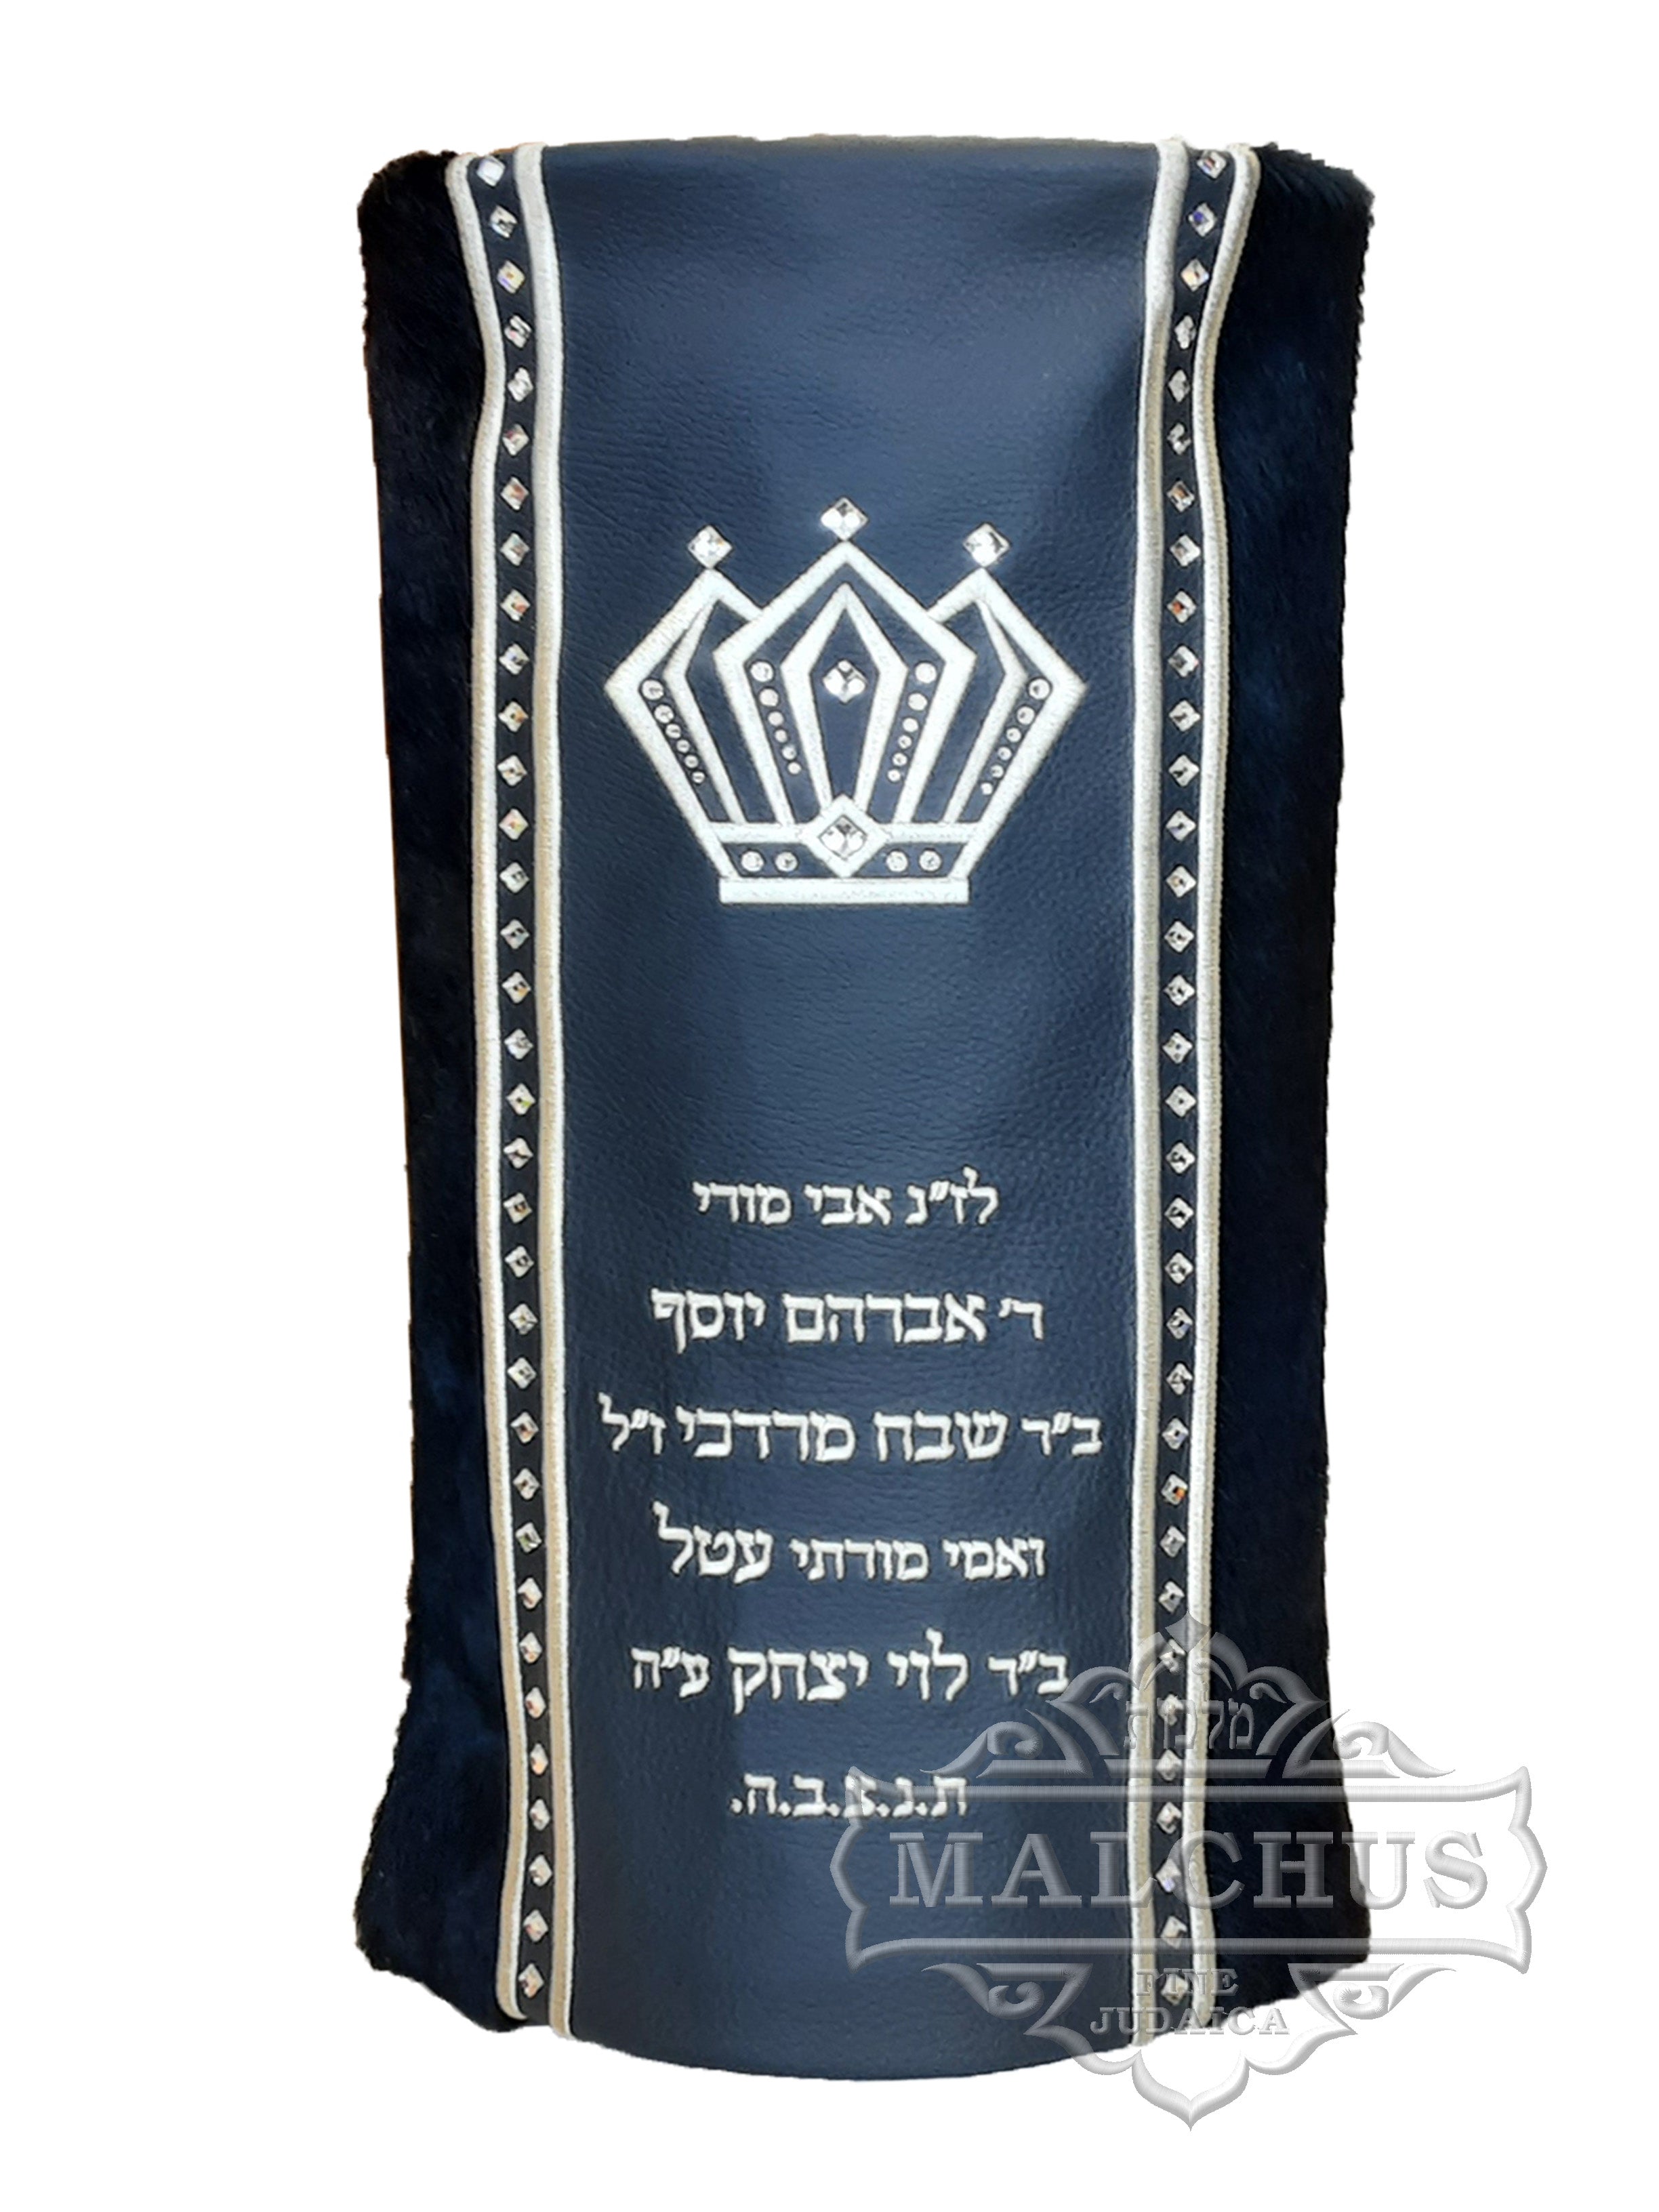 Sefer Torah Mantel #18-8